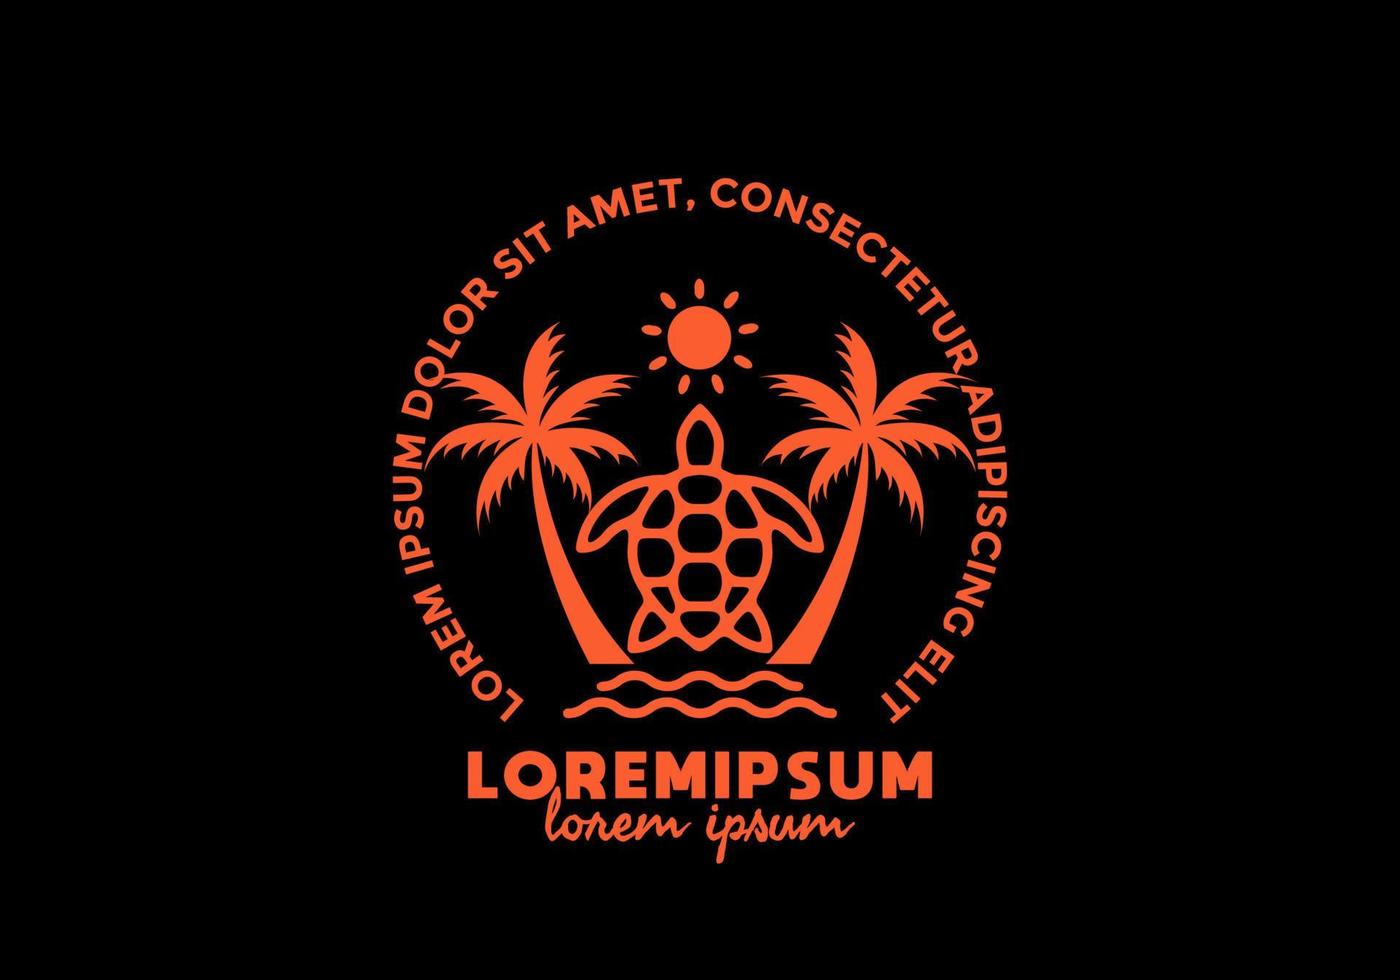 oranje kleur van schildpad en kokospalm met lorem ipsum-tekst vector